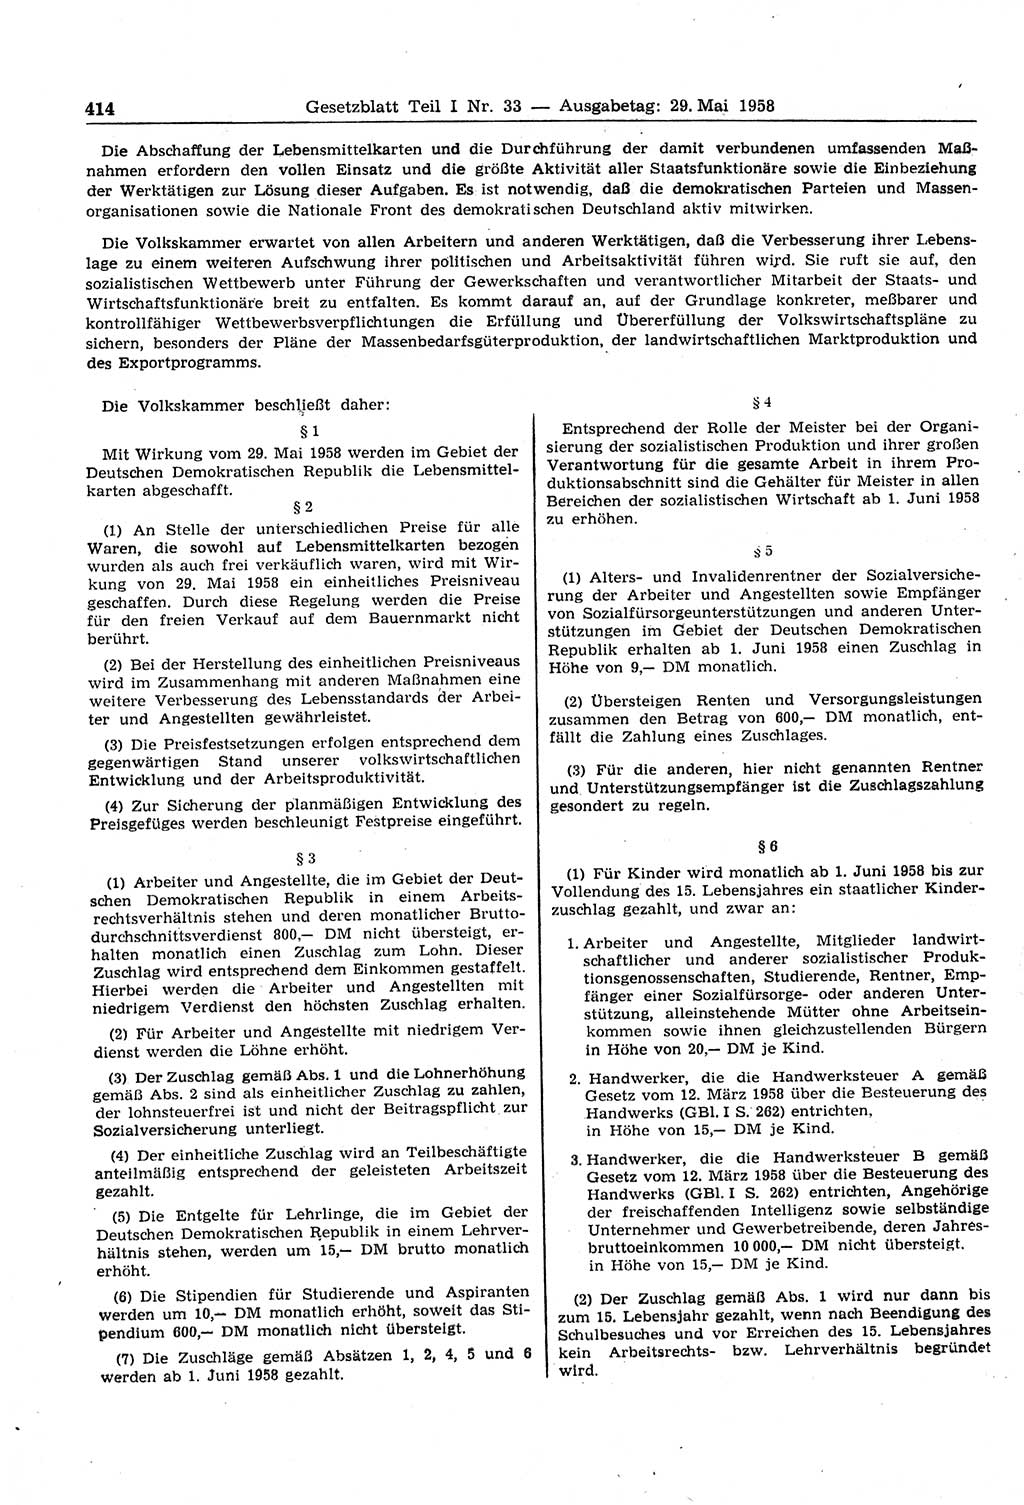 Gesetzblatt (GBl.) der Deutschen Demokratischen Republik (DDR) Teil Ⅰ 1958, Seite 414 (GBl. DDR Ⅰ 1958, S. 414)